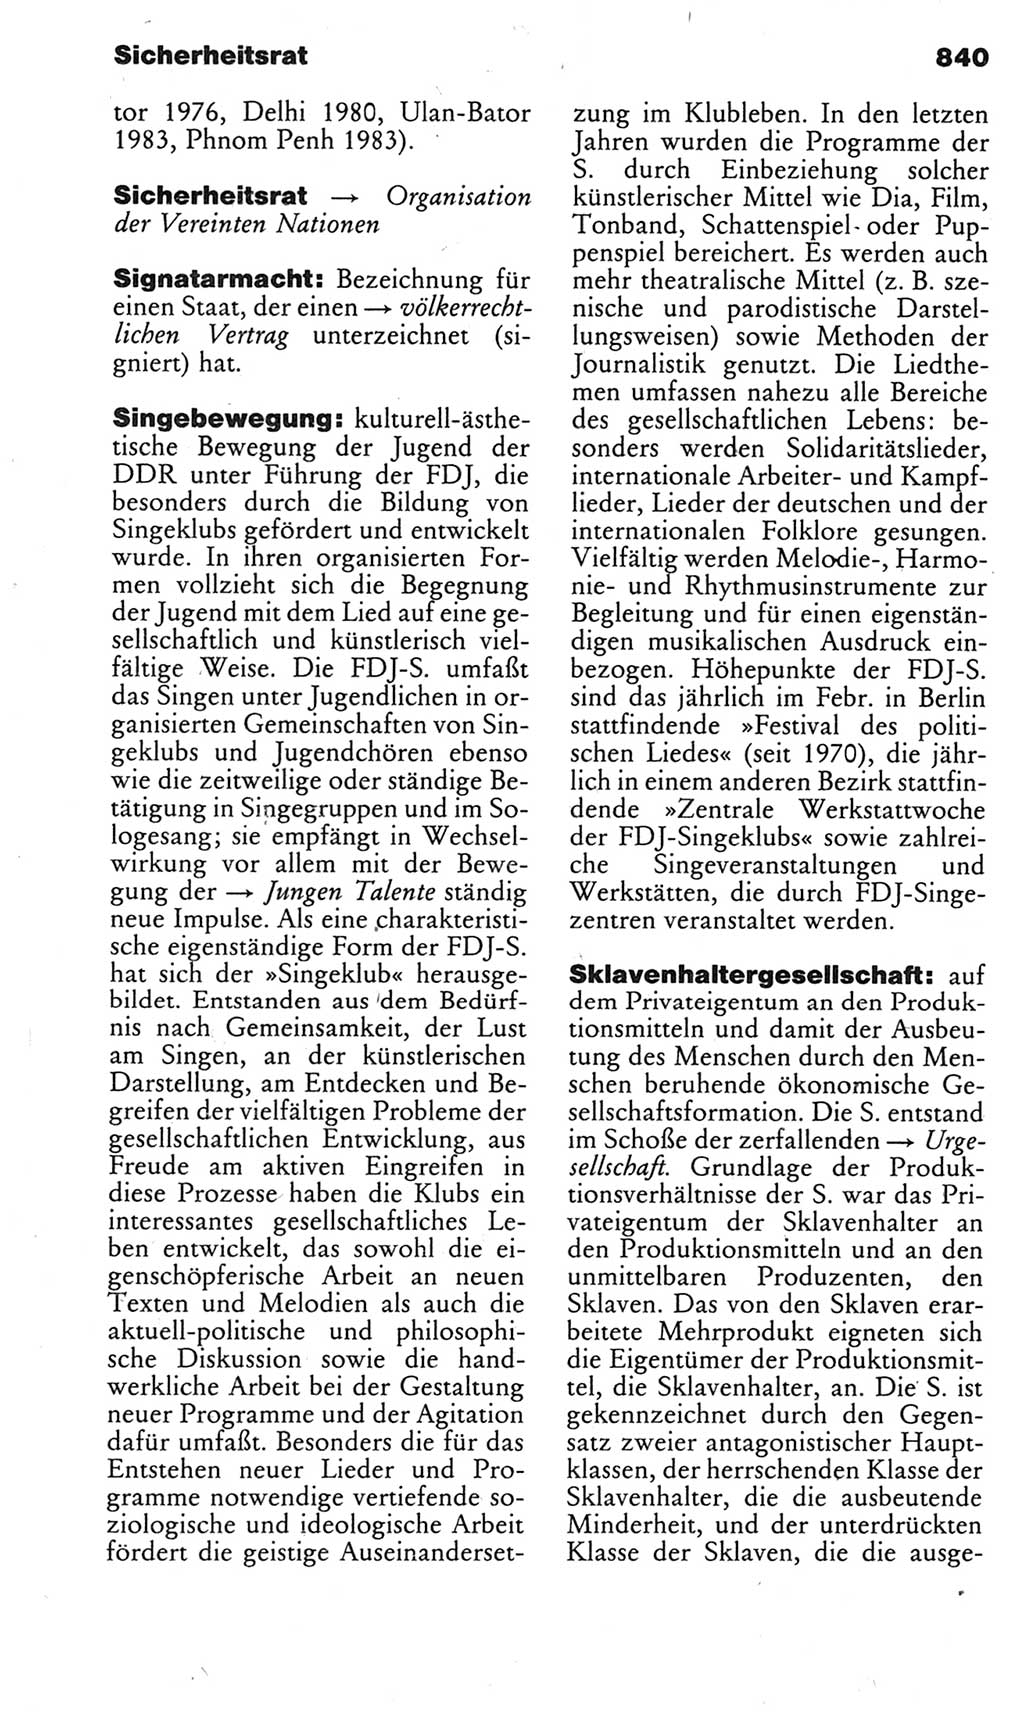 Kleines politisches Wörterbuch [Deutsche Demokratische Republik (DDR)] 1983, Seite 840 (Kl. pol. Wb. DDR 1983, S. 840)